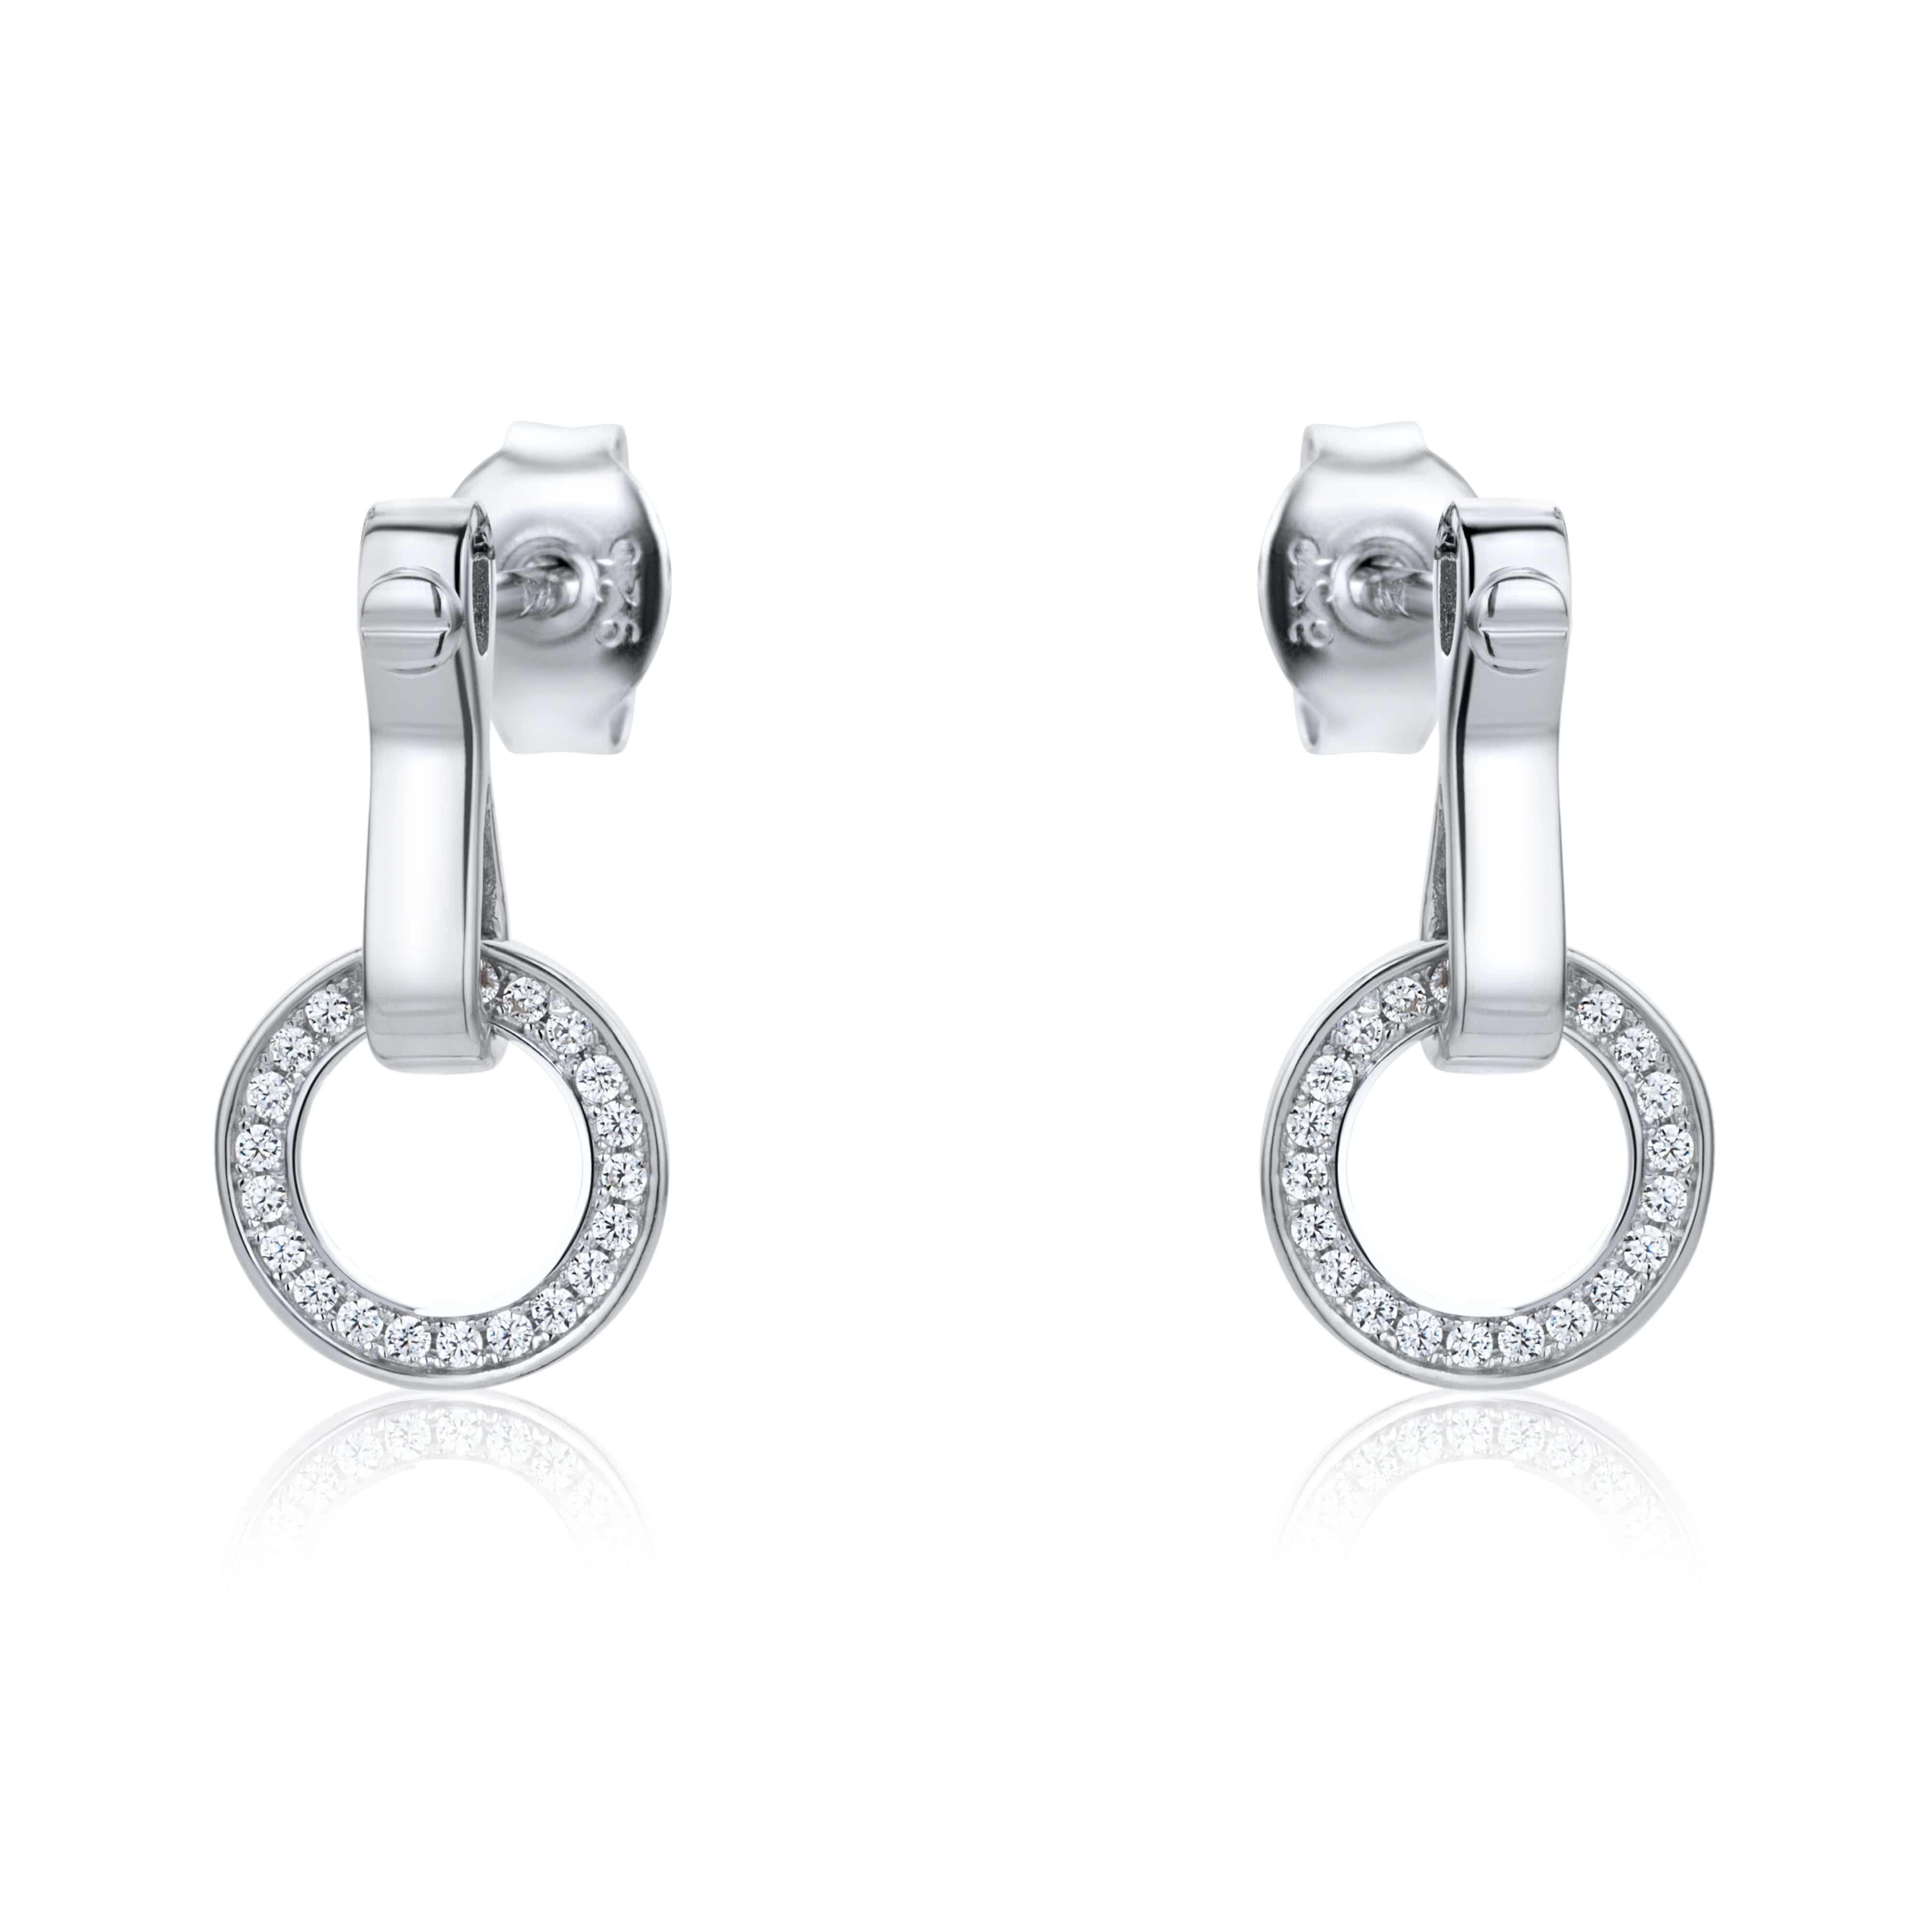 Lynora Jewellery Earring Sterling Silver Spotlight Earrings Sterling Silver